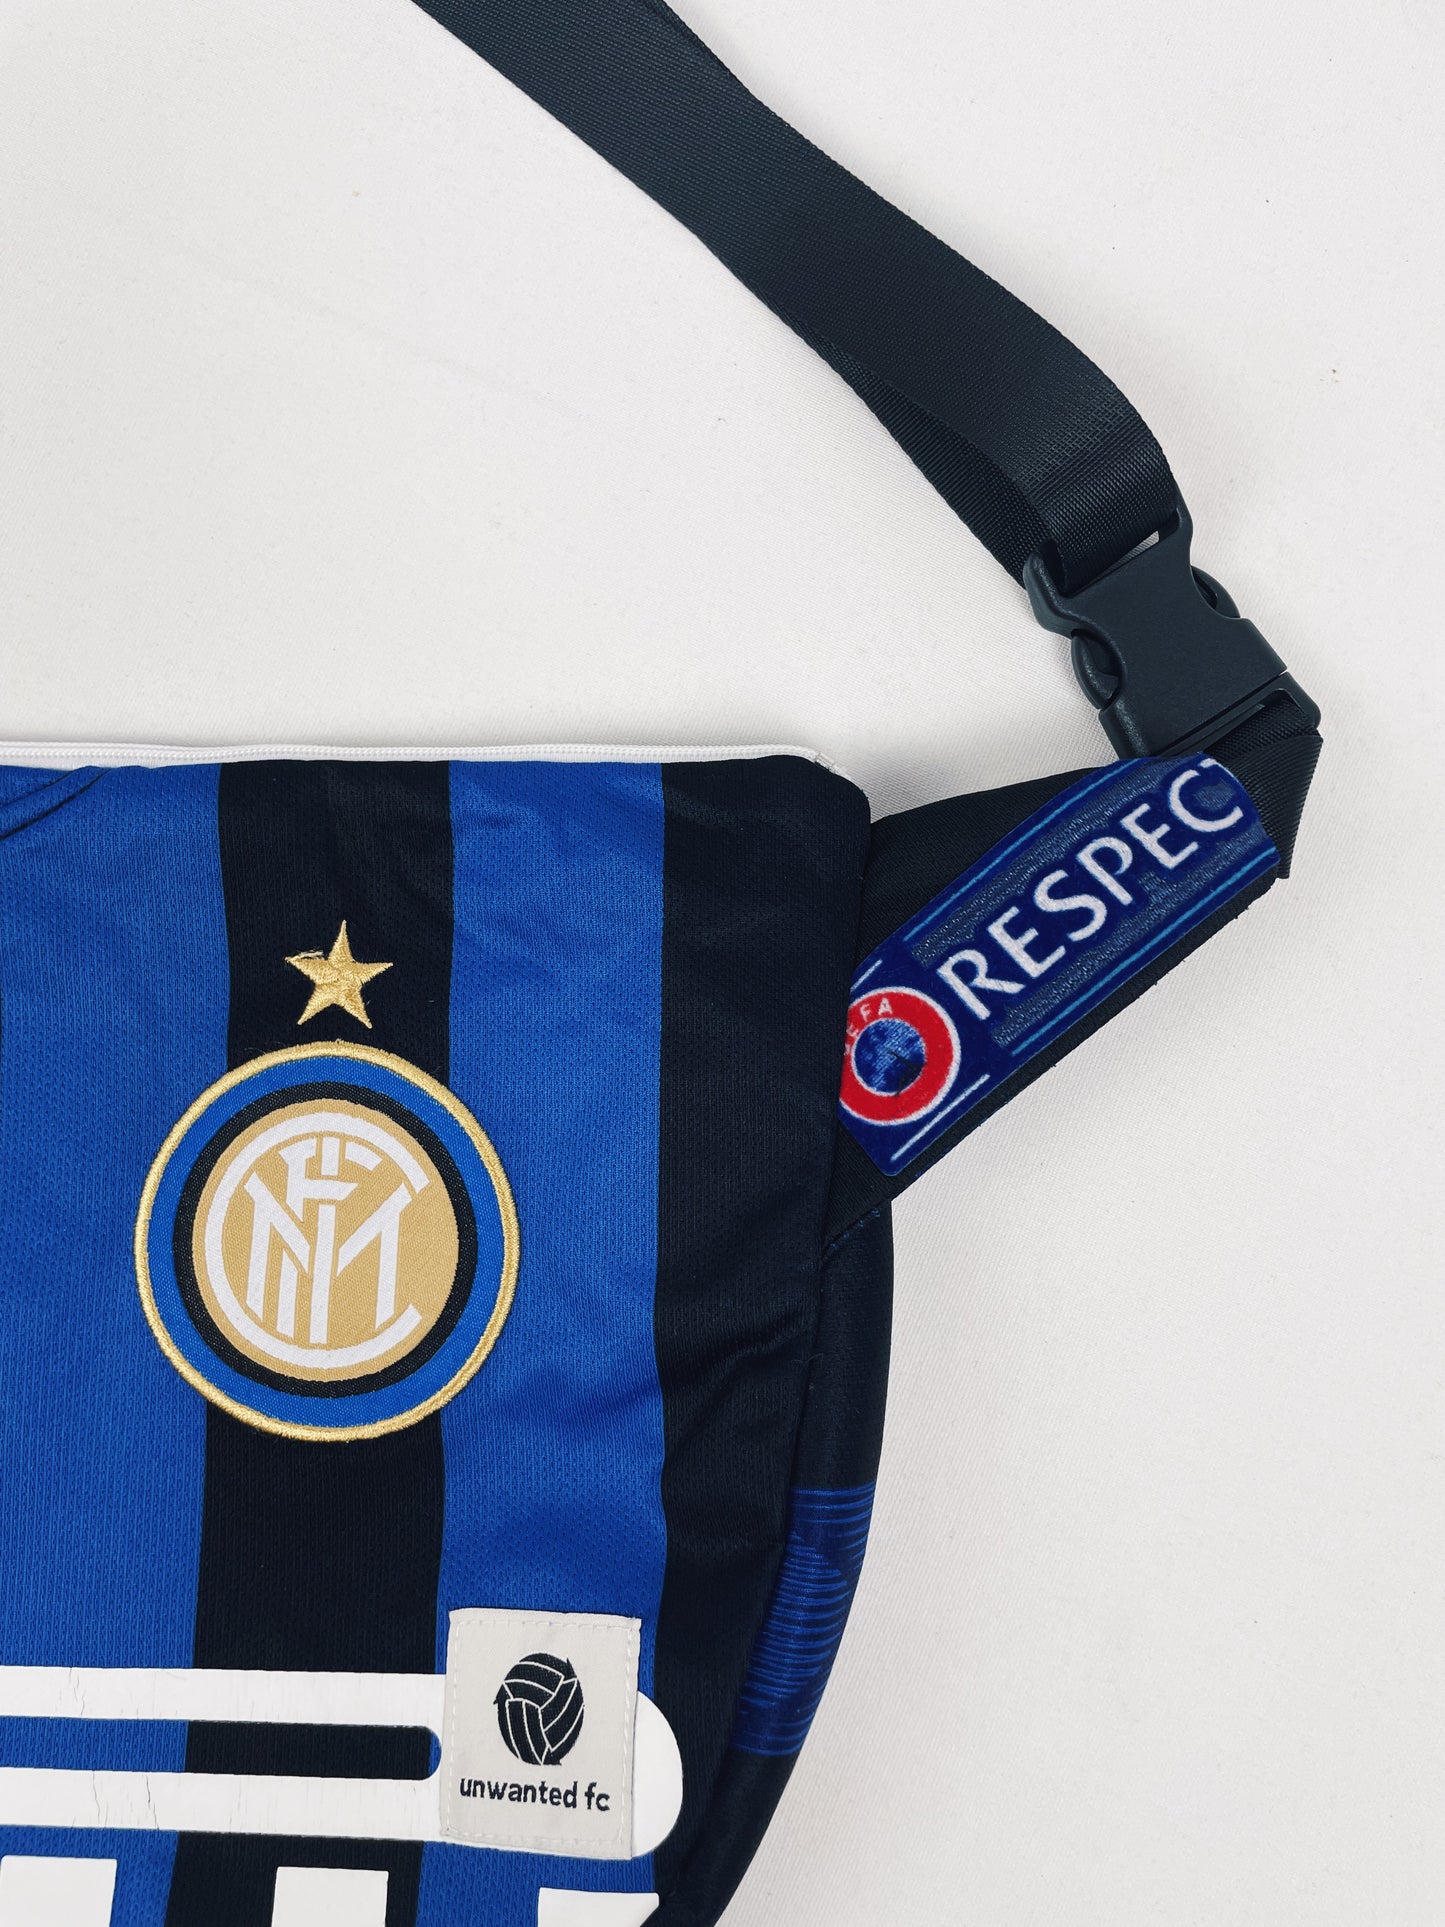 Inter Milan Crossbody Satchel